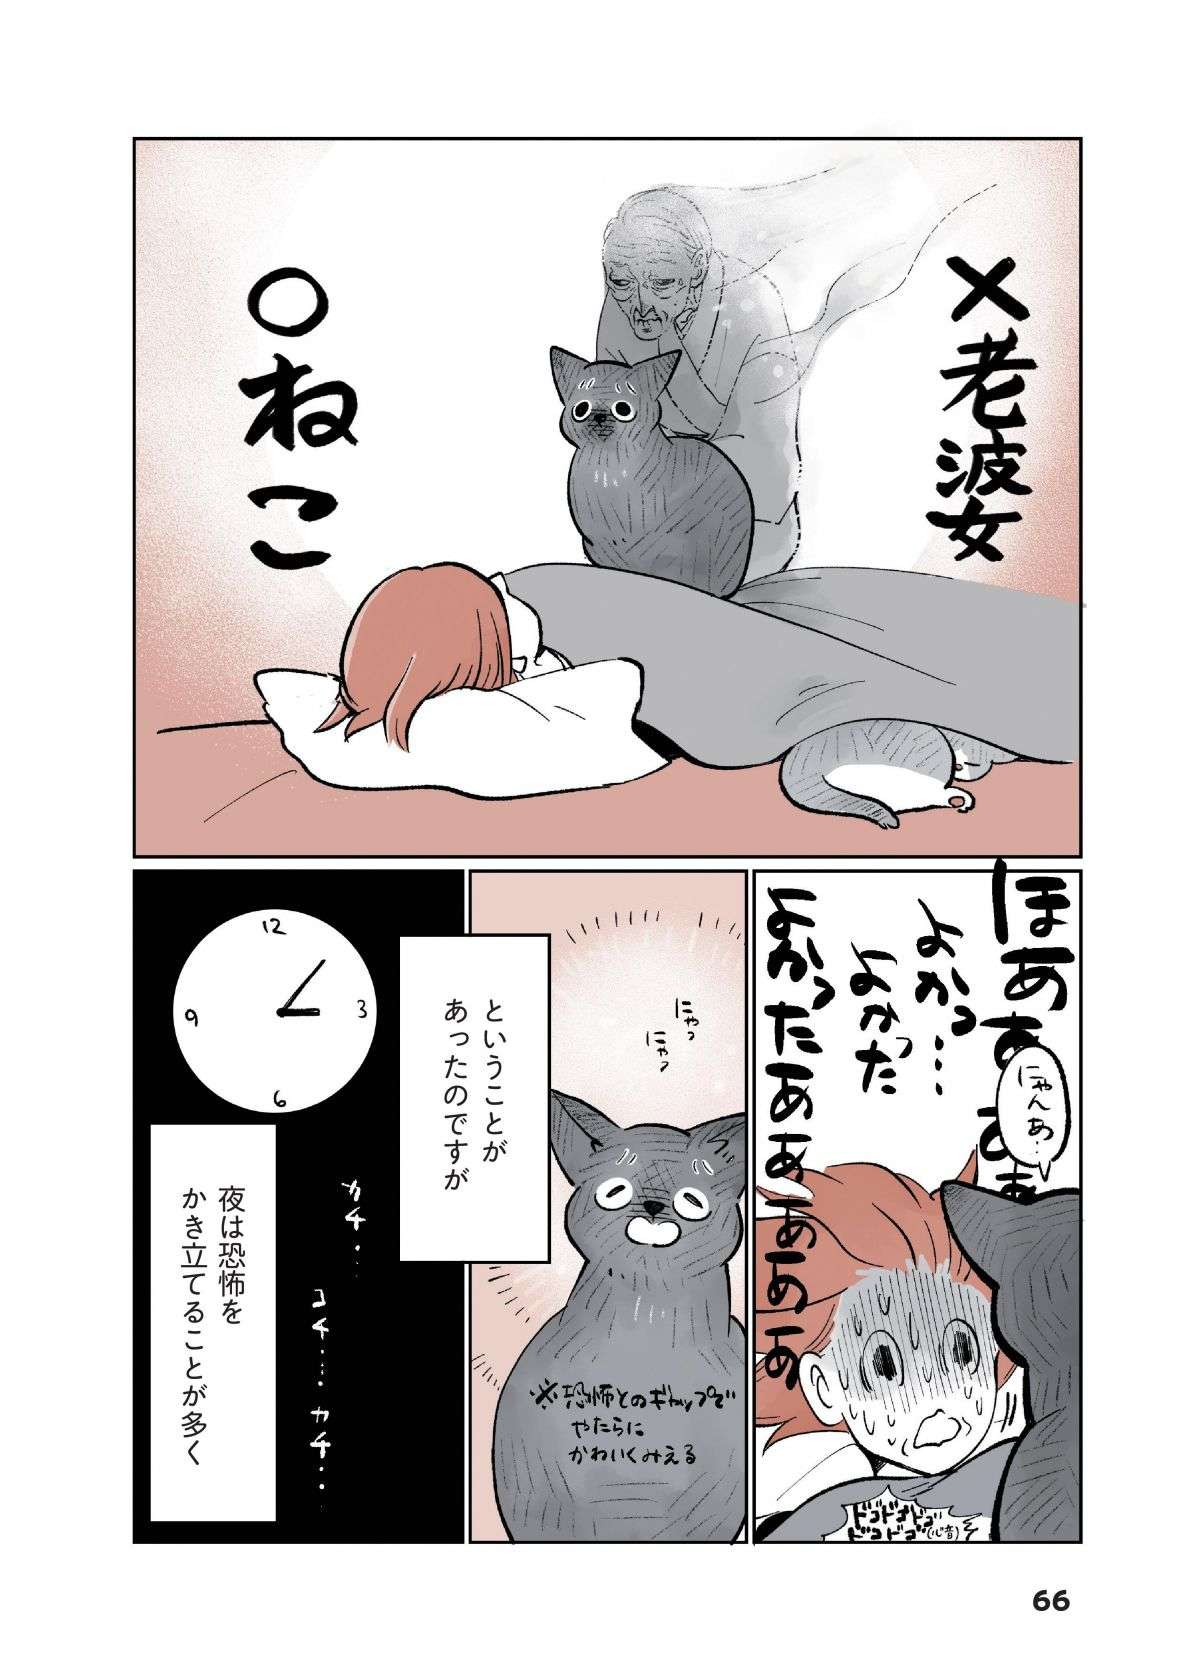 夜中、布団の上に「何か」が乗っている!? 猫とホラーの新ジャンル「怖かわいい」とは／こねこのドレイ koneko_dorei7-3.jpg